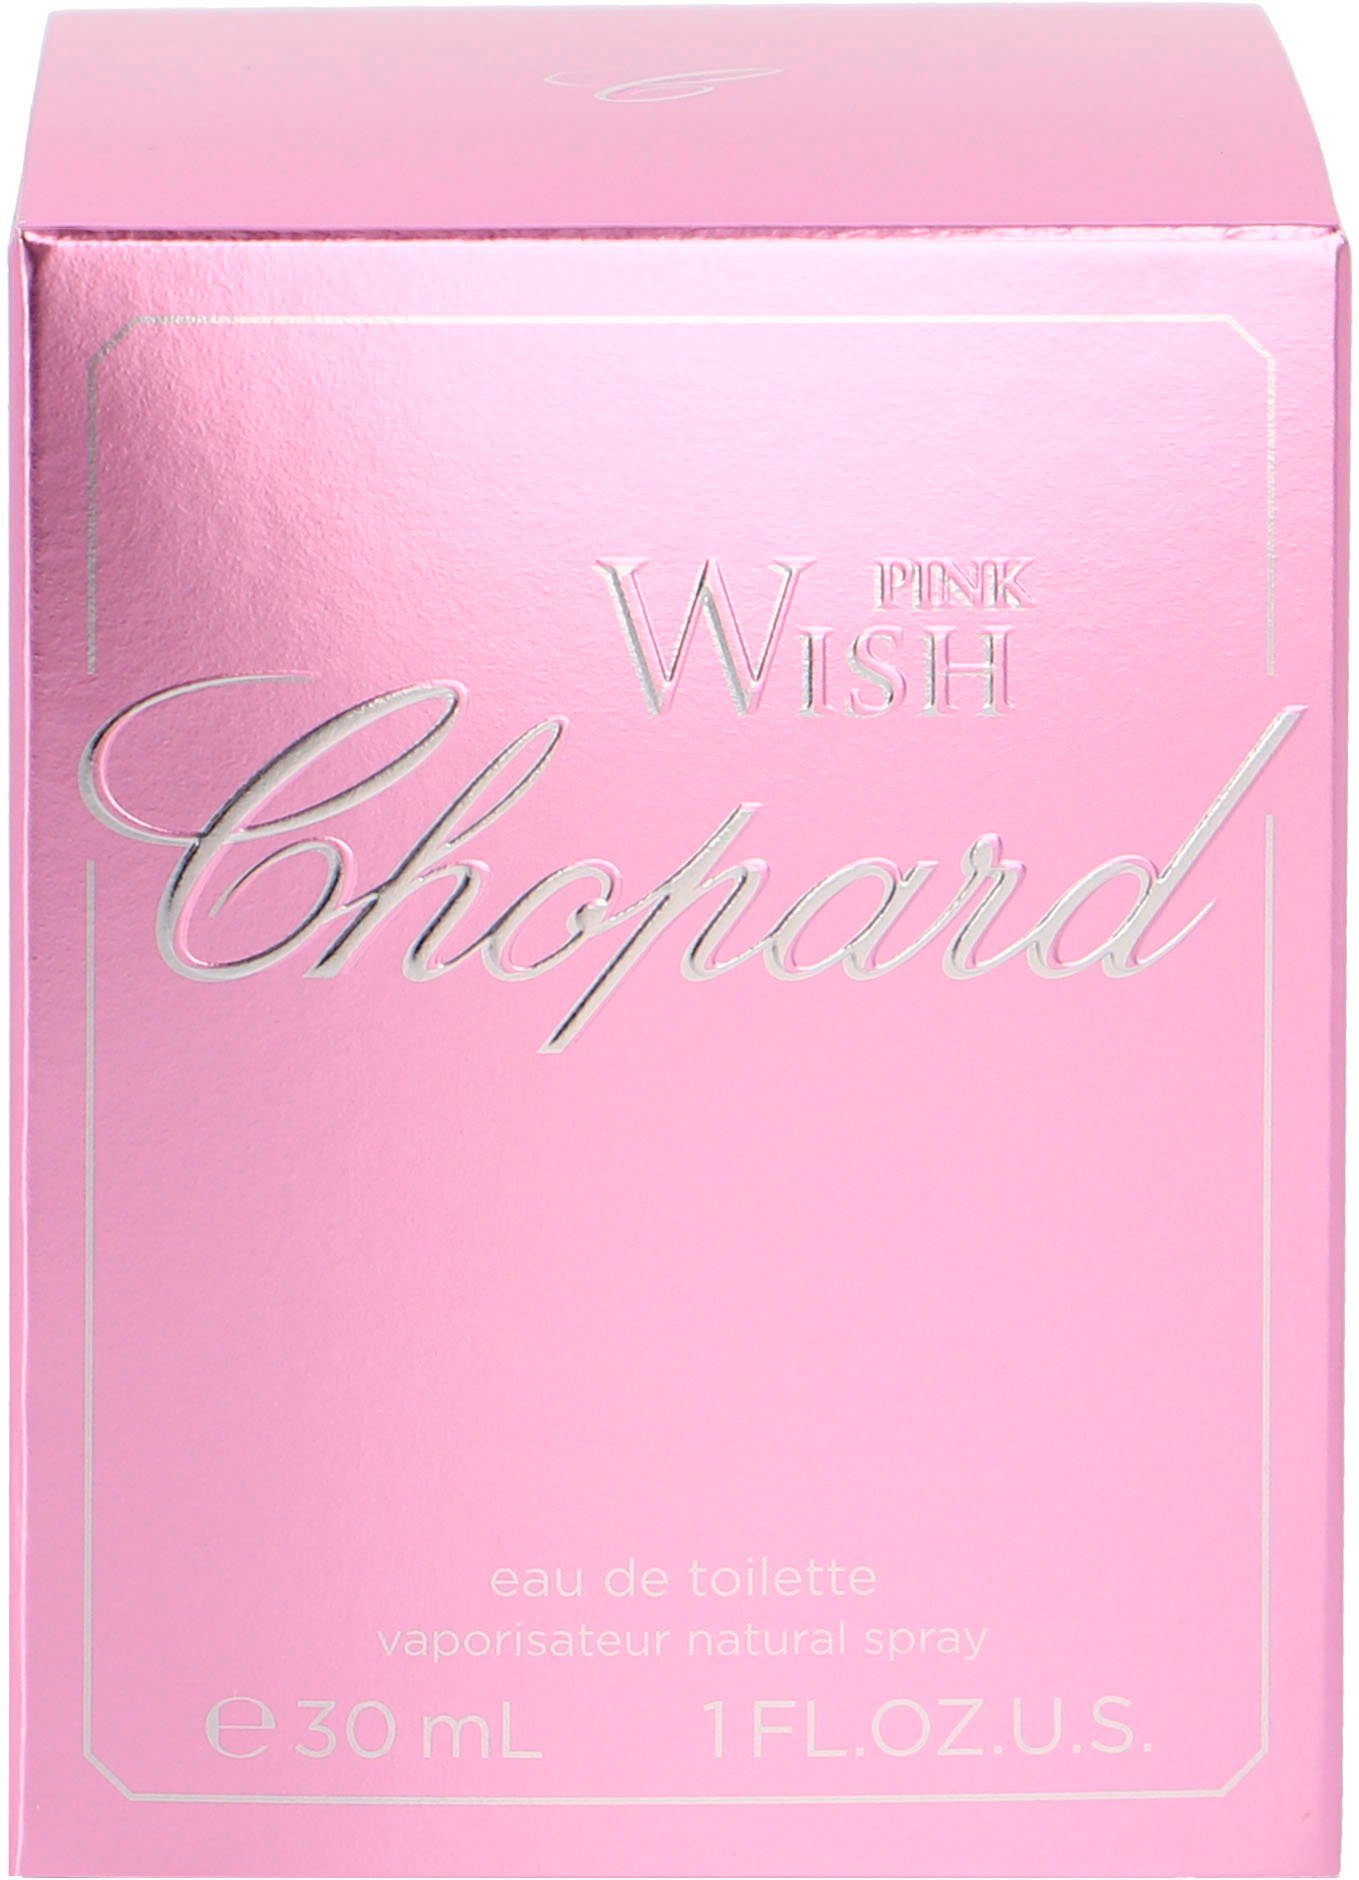 Pink Wish Eau Toilette de Chopard